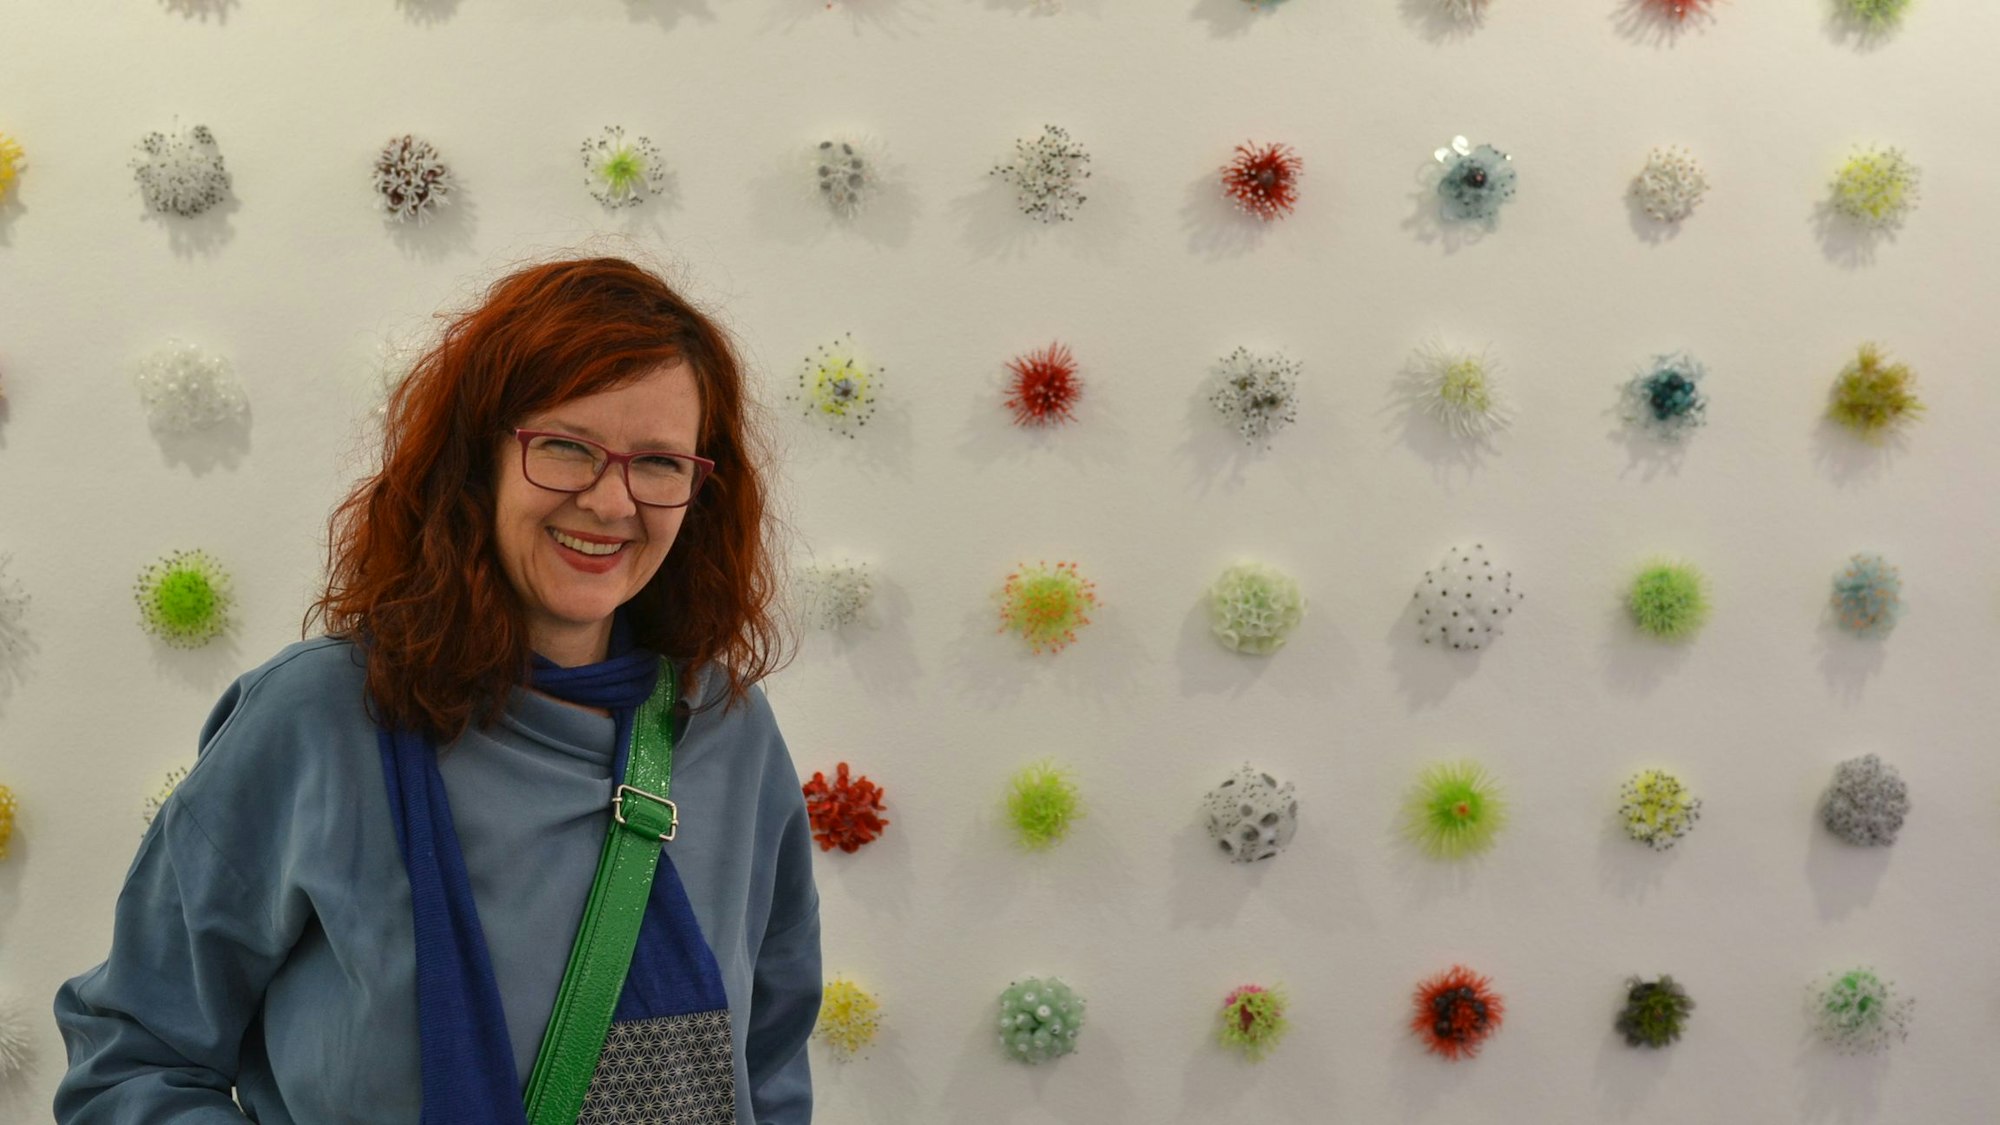 Wasserwesen aus Glas präsentiert Künstlerin Lea Lenhart in der gleichnamigen Ausstellung der Galerie Lethert in Bad Münstereifel.